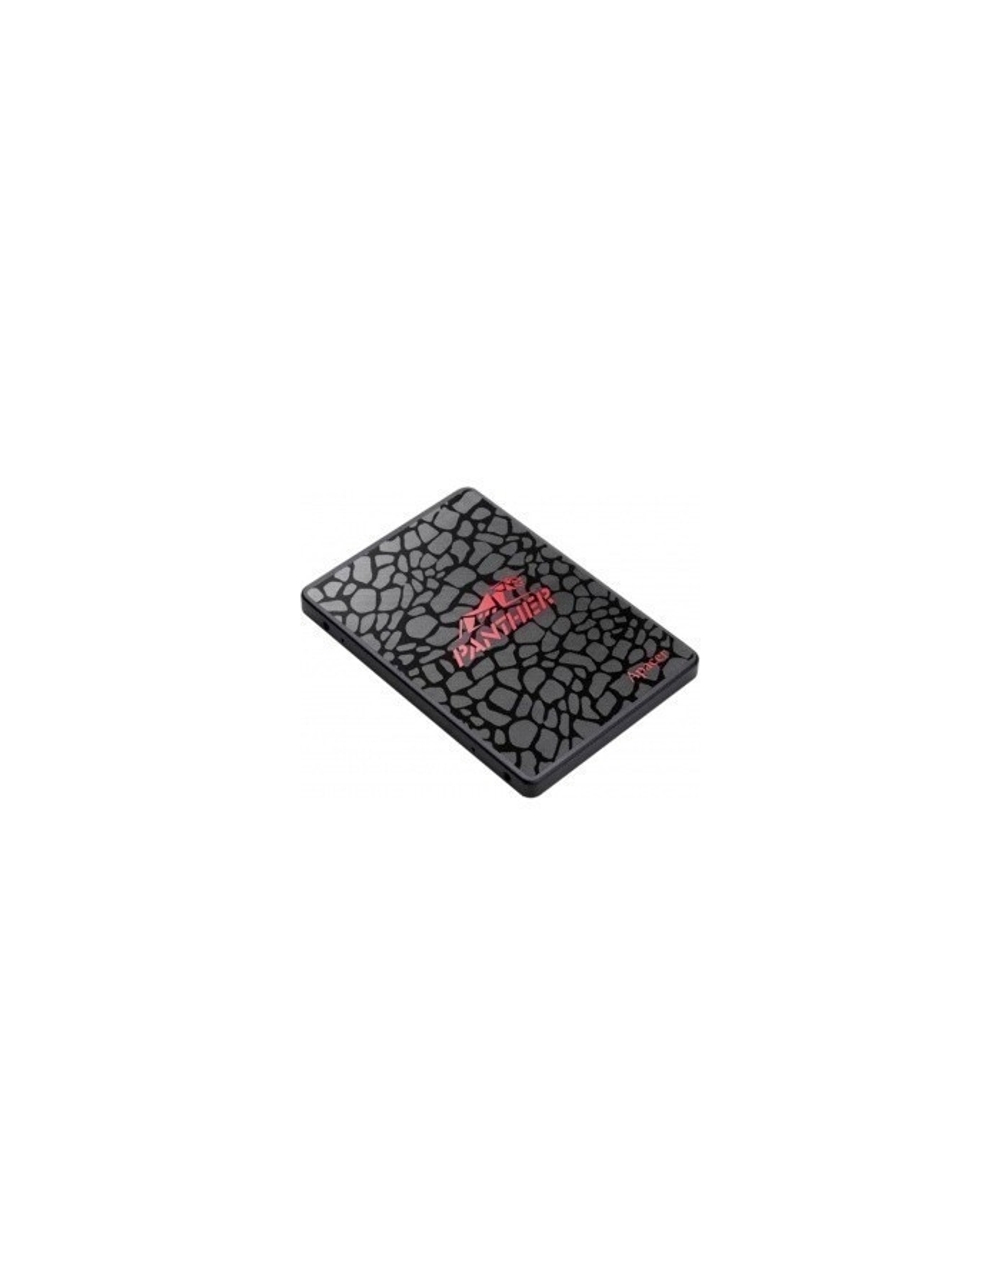 Apacer SSD AS350 1TB SATA 2.5" 7mm, R560/W540 Mb/s, IOPS 80/93K, MTBF 1,5M, 3D TLC, 600TBW, Retail (AP1TBAS350-1)